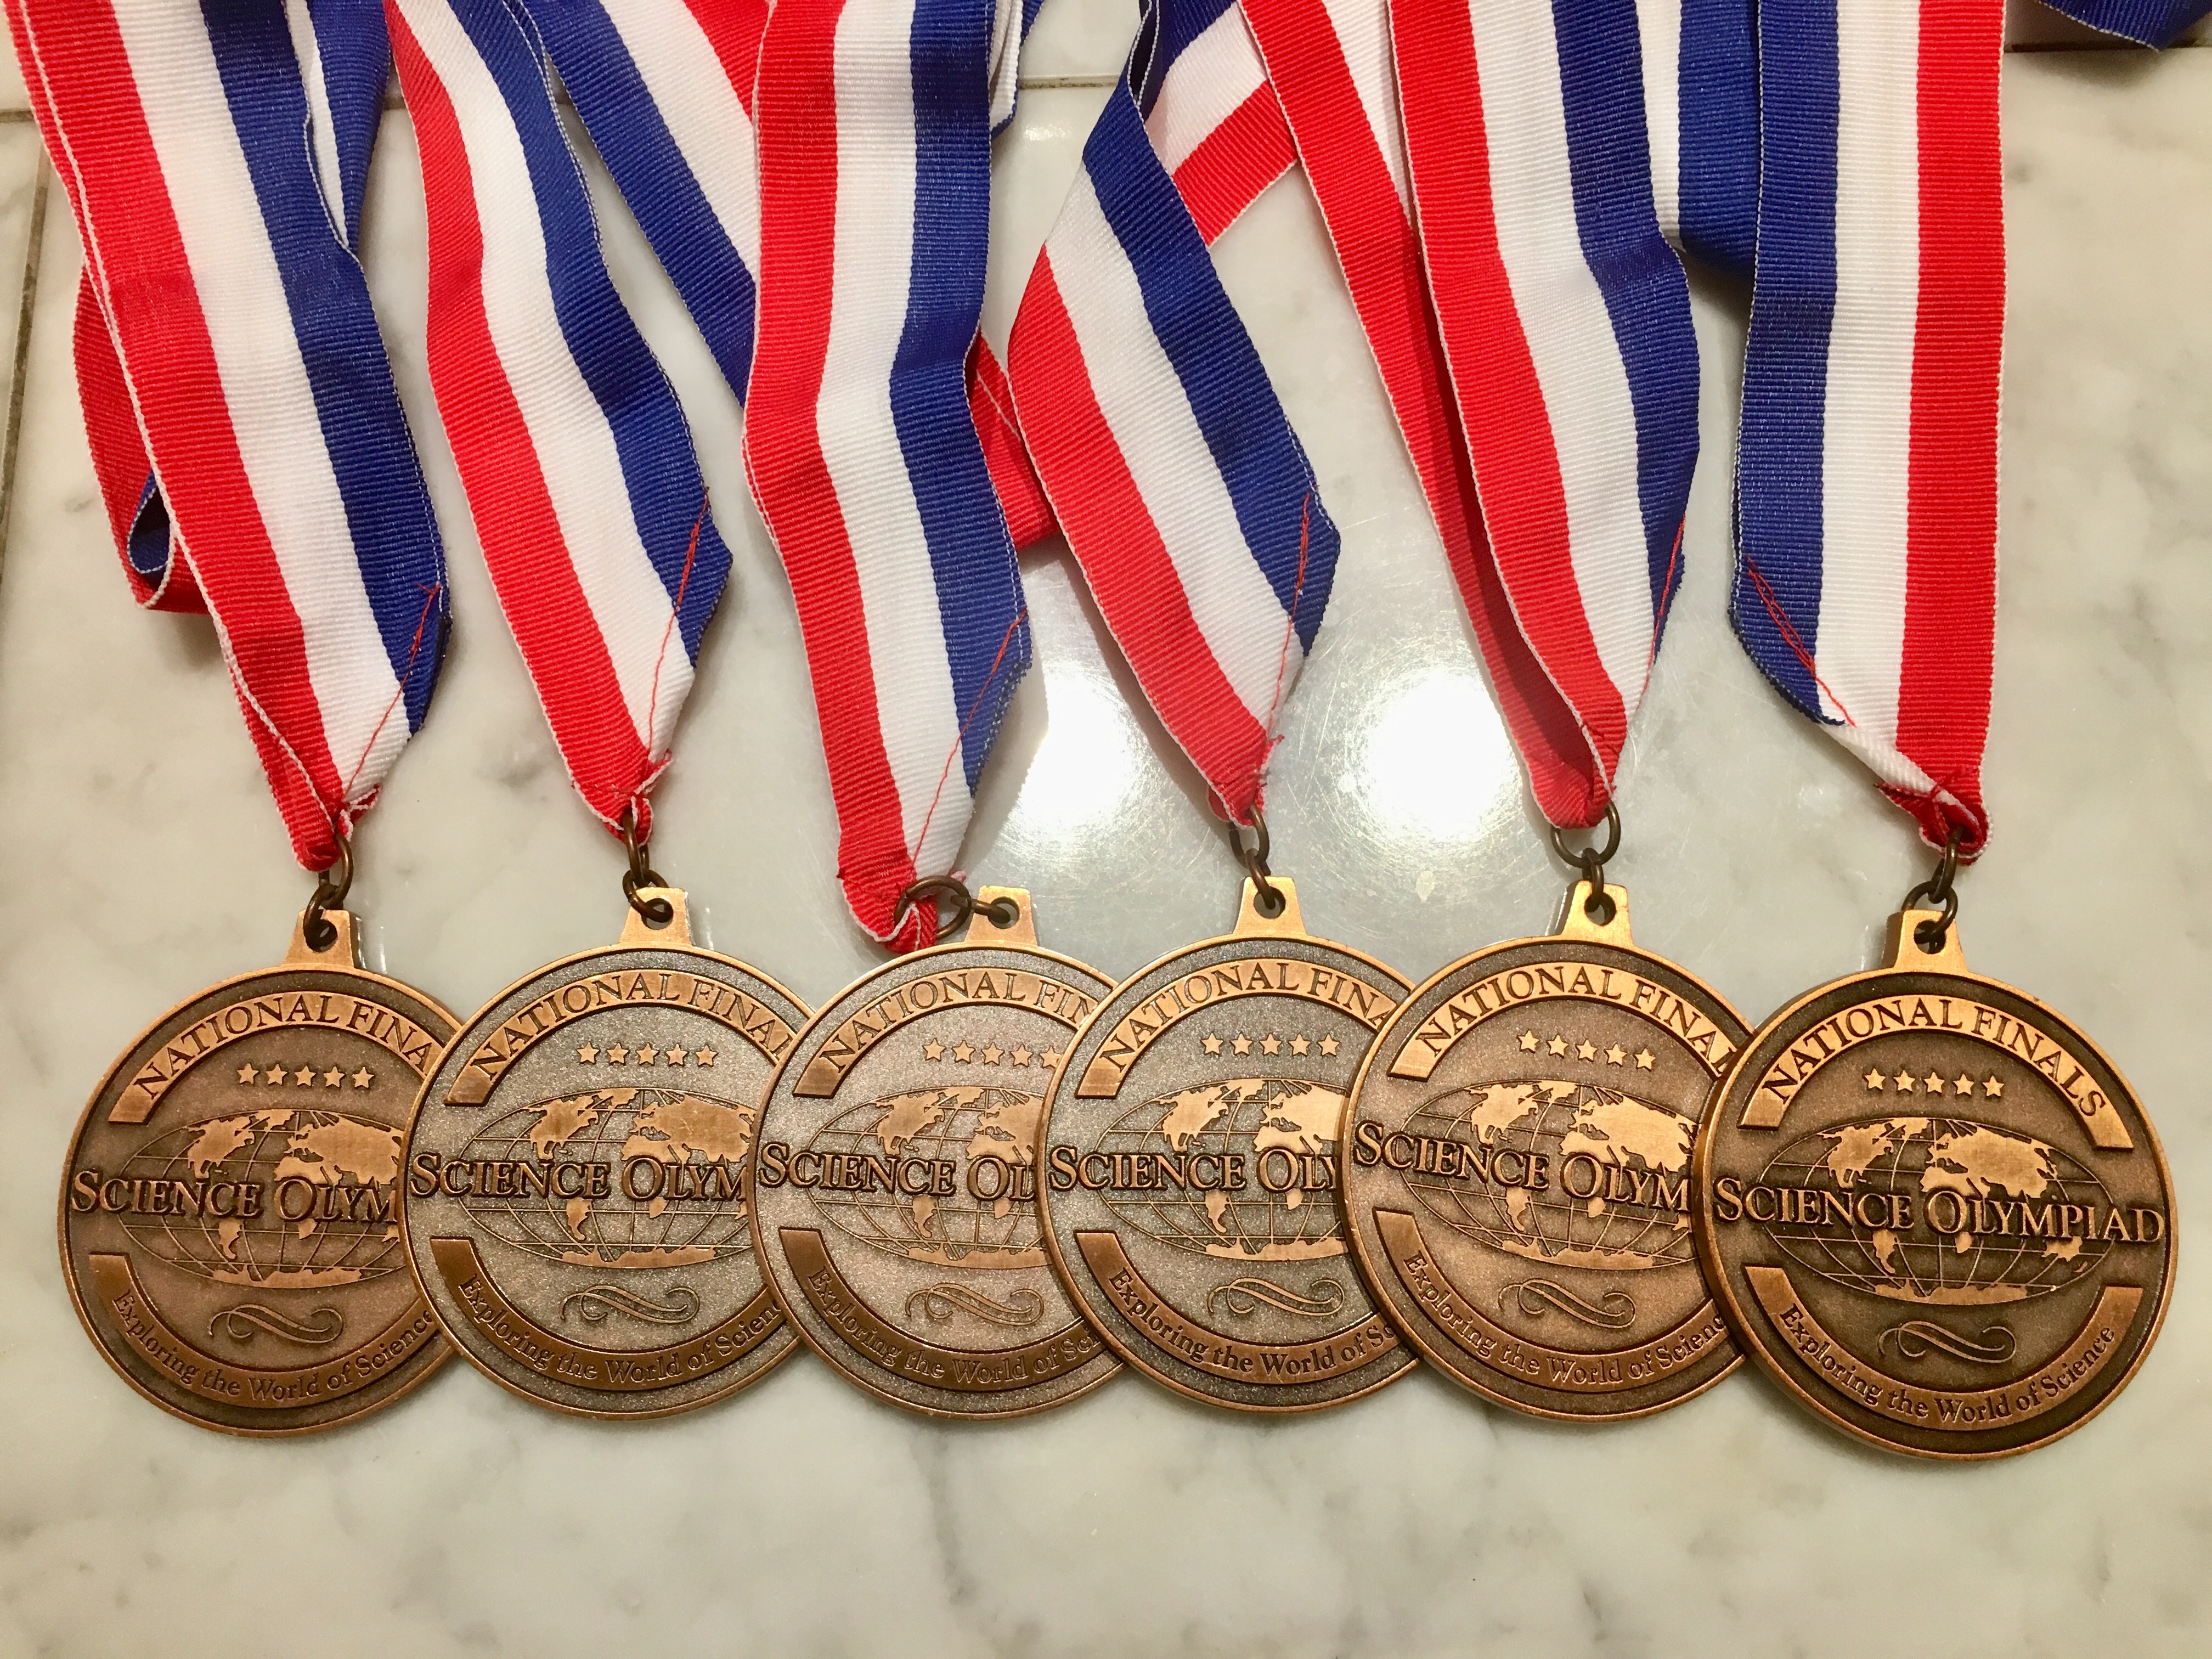 My 6 SciO Nationals medals